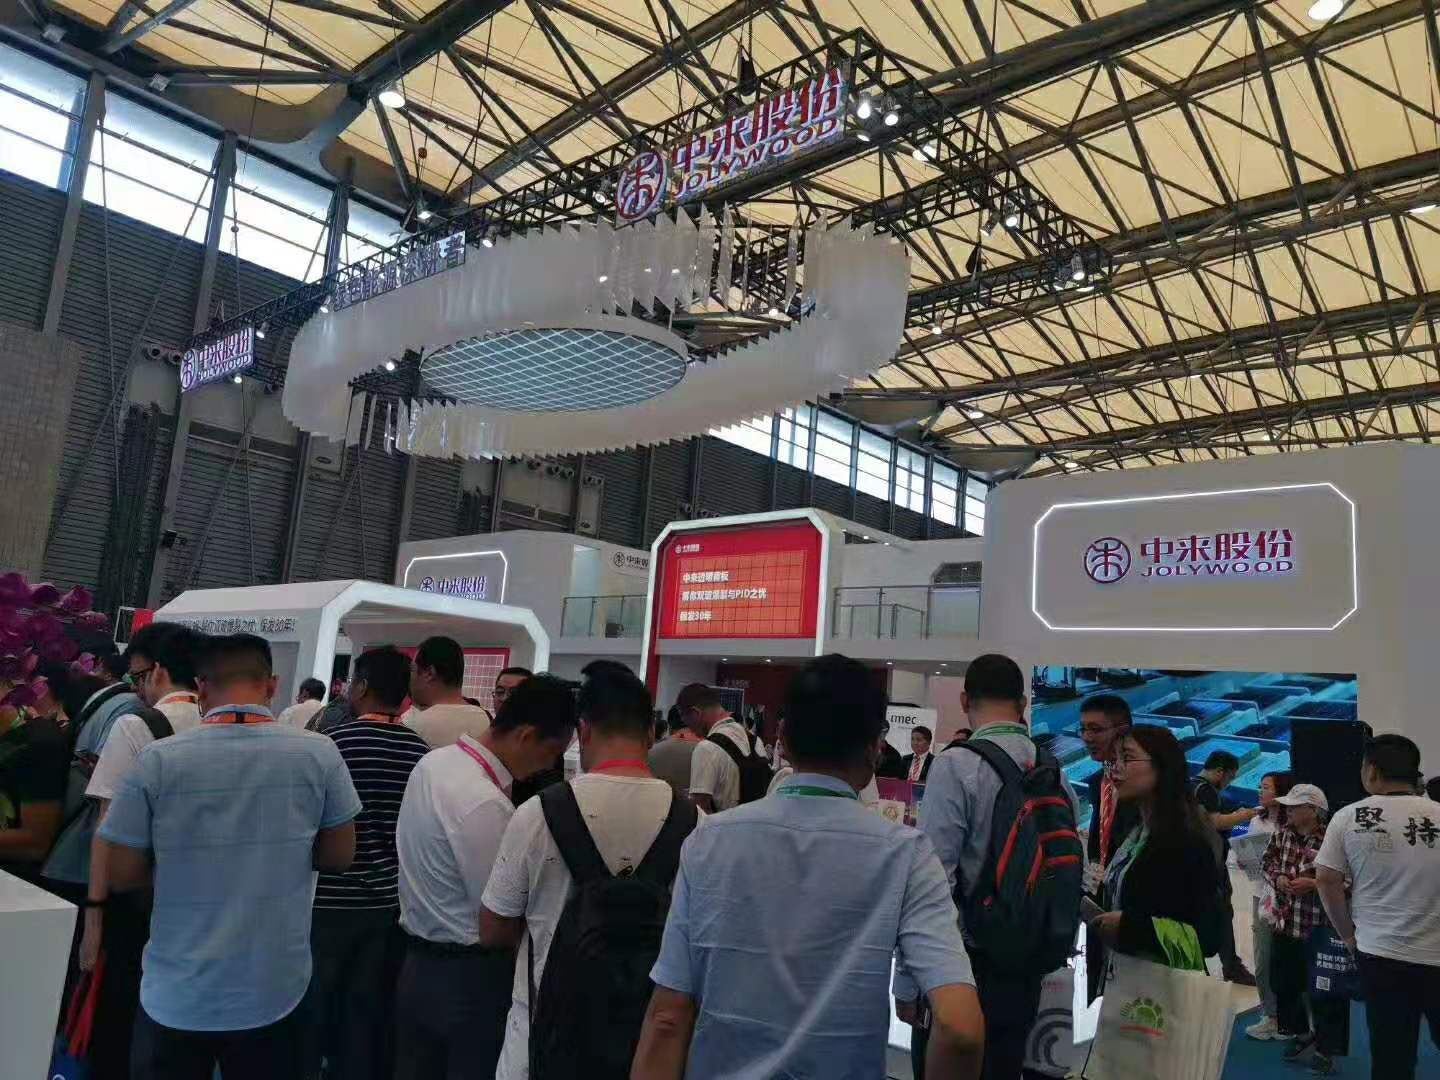 SNEC2020上海国际光伏展览会,SNEC2020*14届太阳能光伏展预定咨询